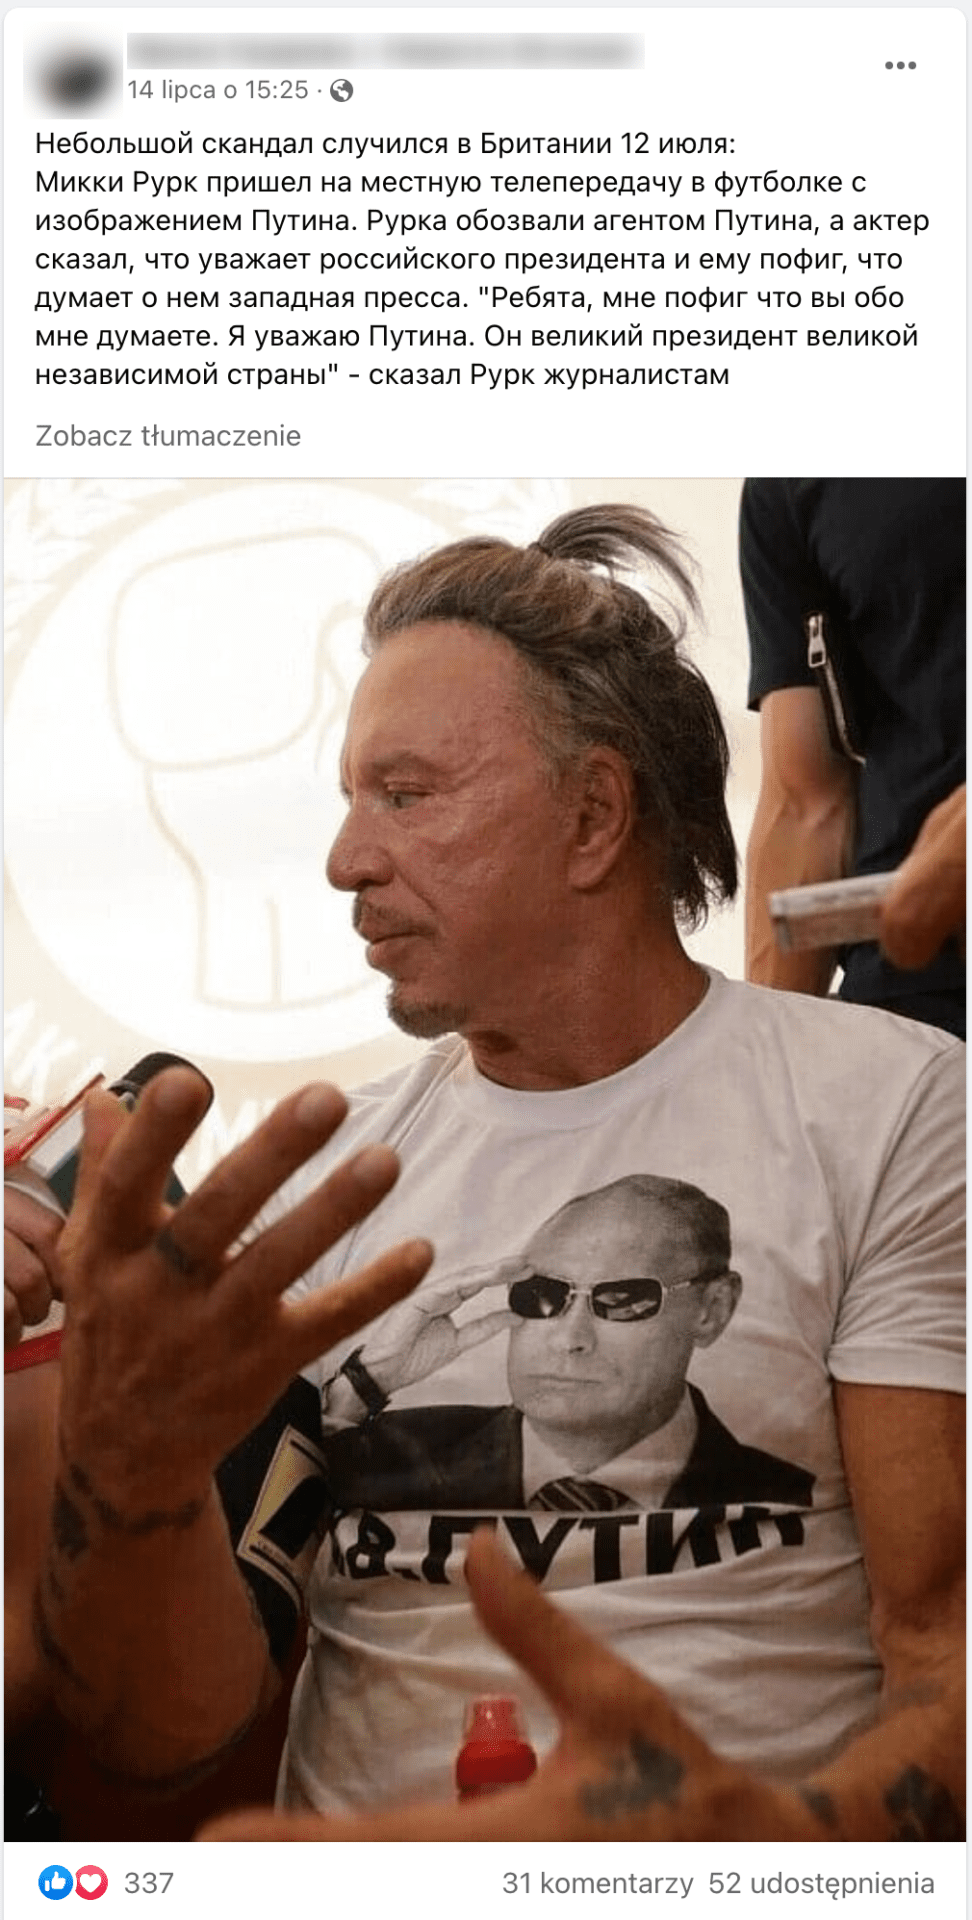 Скриншот упомянутого поста в Фейсбуке. В качестве иллюстрации была использована фотография актера в футболке с Владимиром Путиным в темных очках.